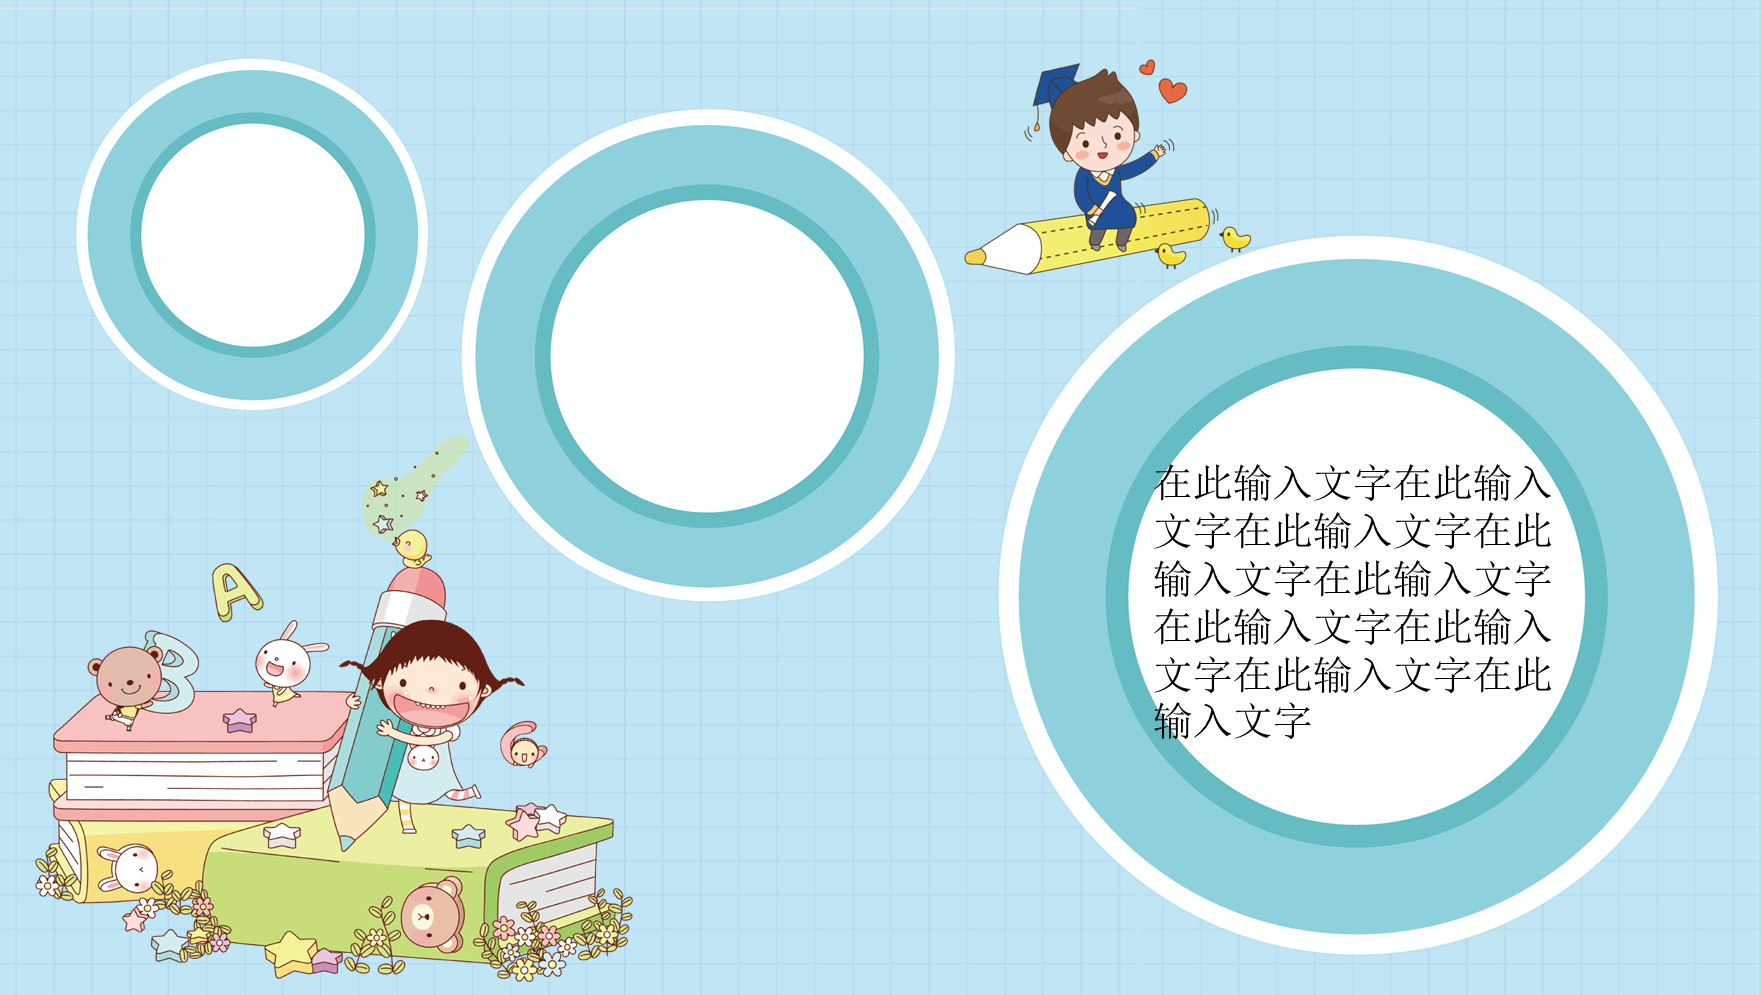 “童心飞扬”主题的可爱卡通PPT模板免费下载 (12).PNG